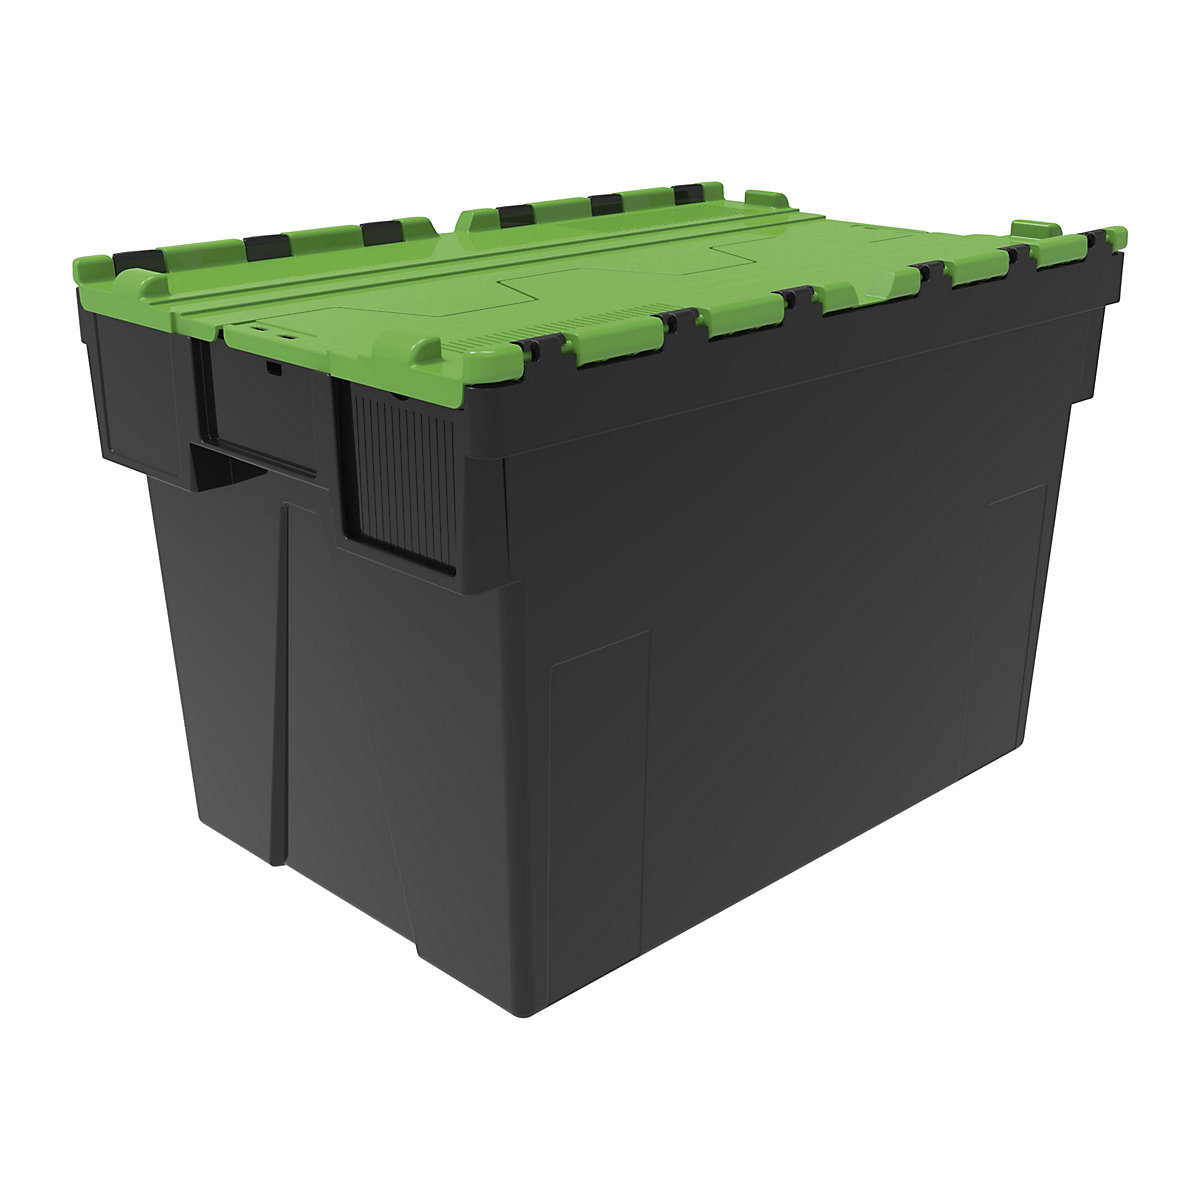 Többször használható rakásolható tároló, h x szé x ma 600 x 400 x 400 mm, cs. e. 5 db, fekete színben, zöld fedéllel